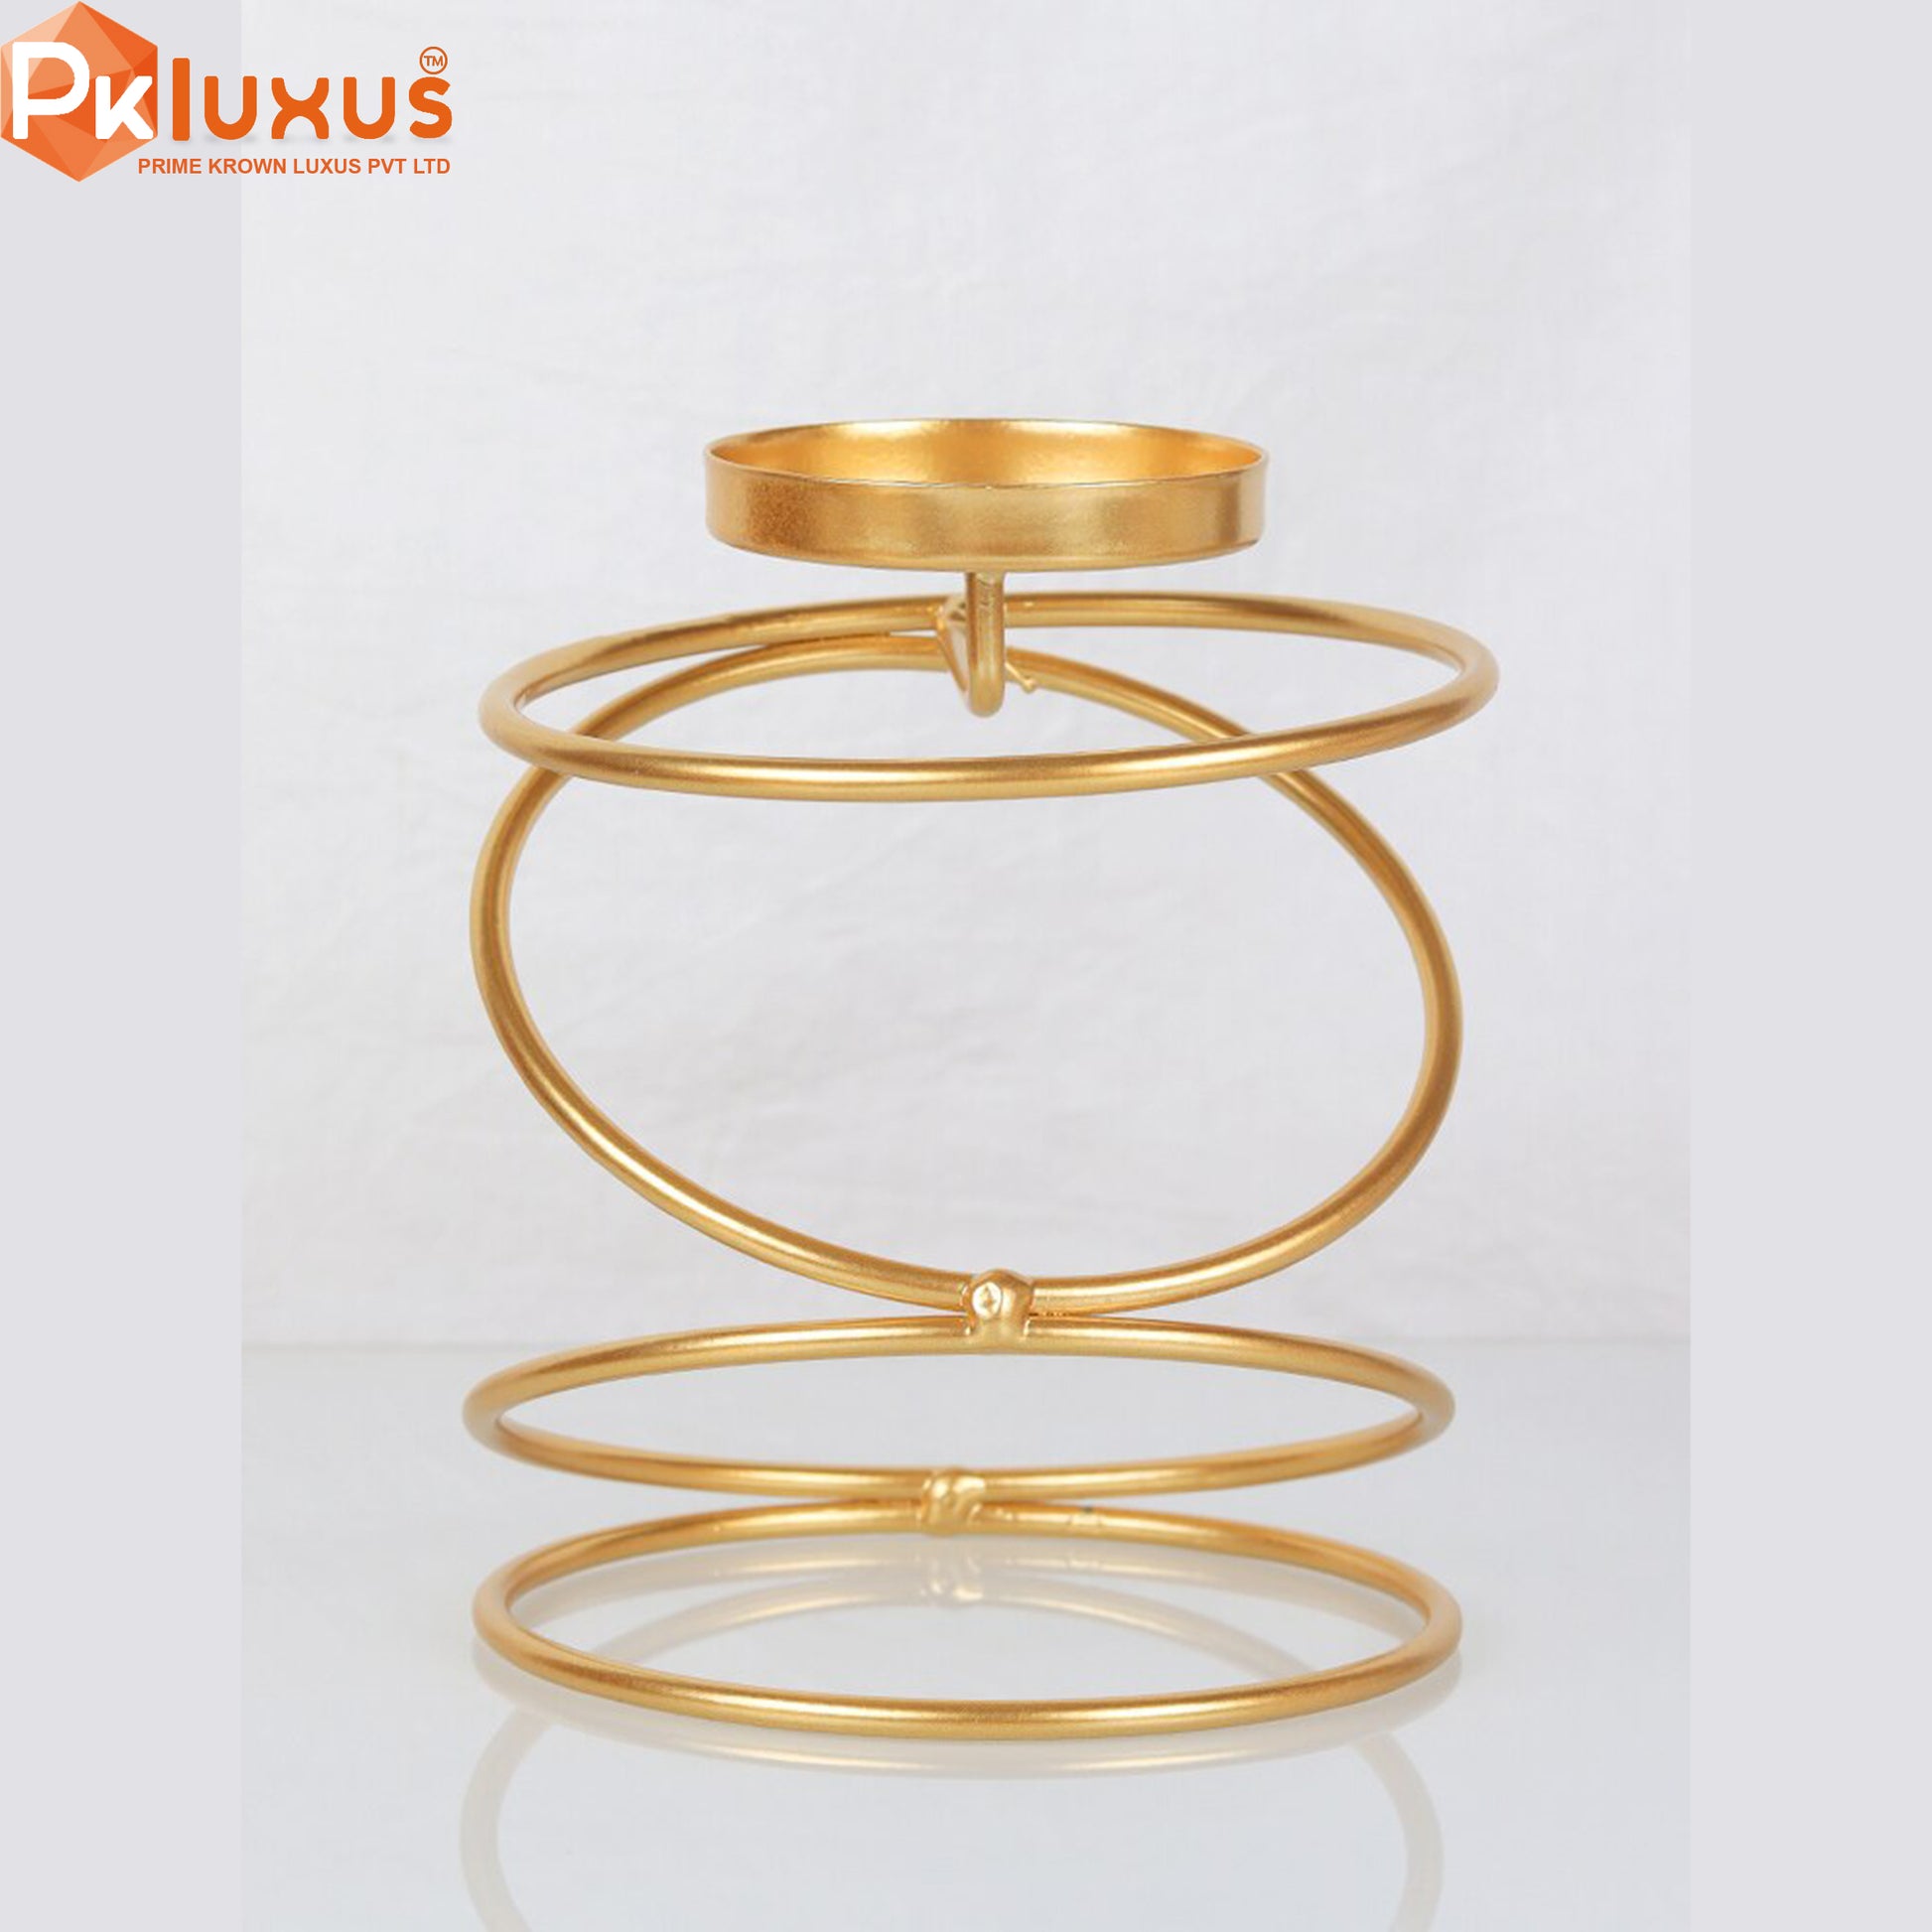 Luxury Style Metal Candle Holders | PK LUXUS™ - PK LUXUS